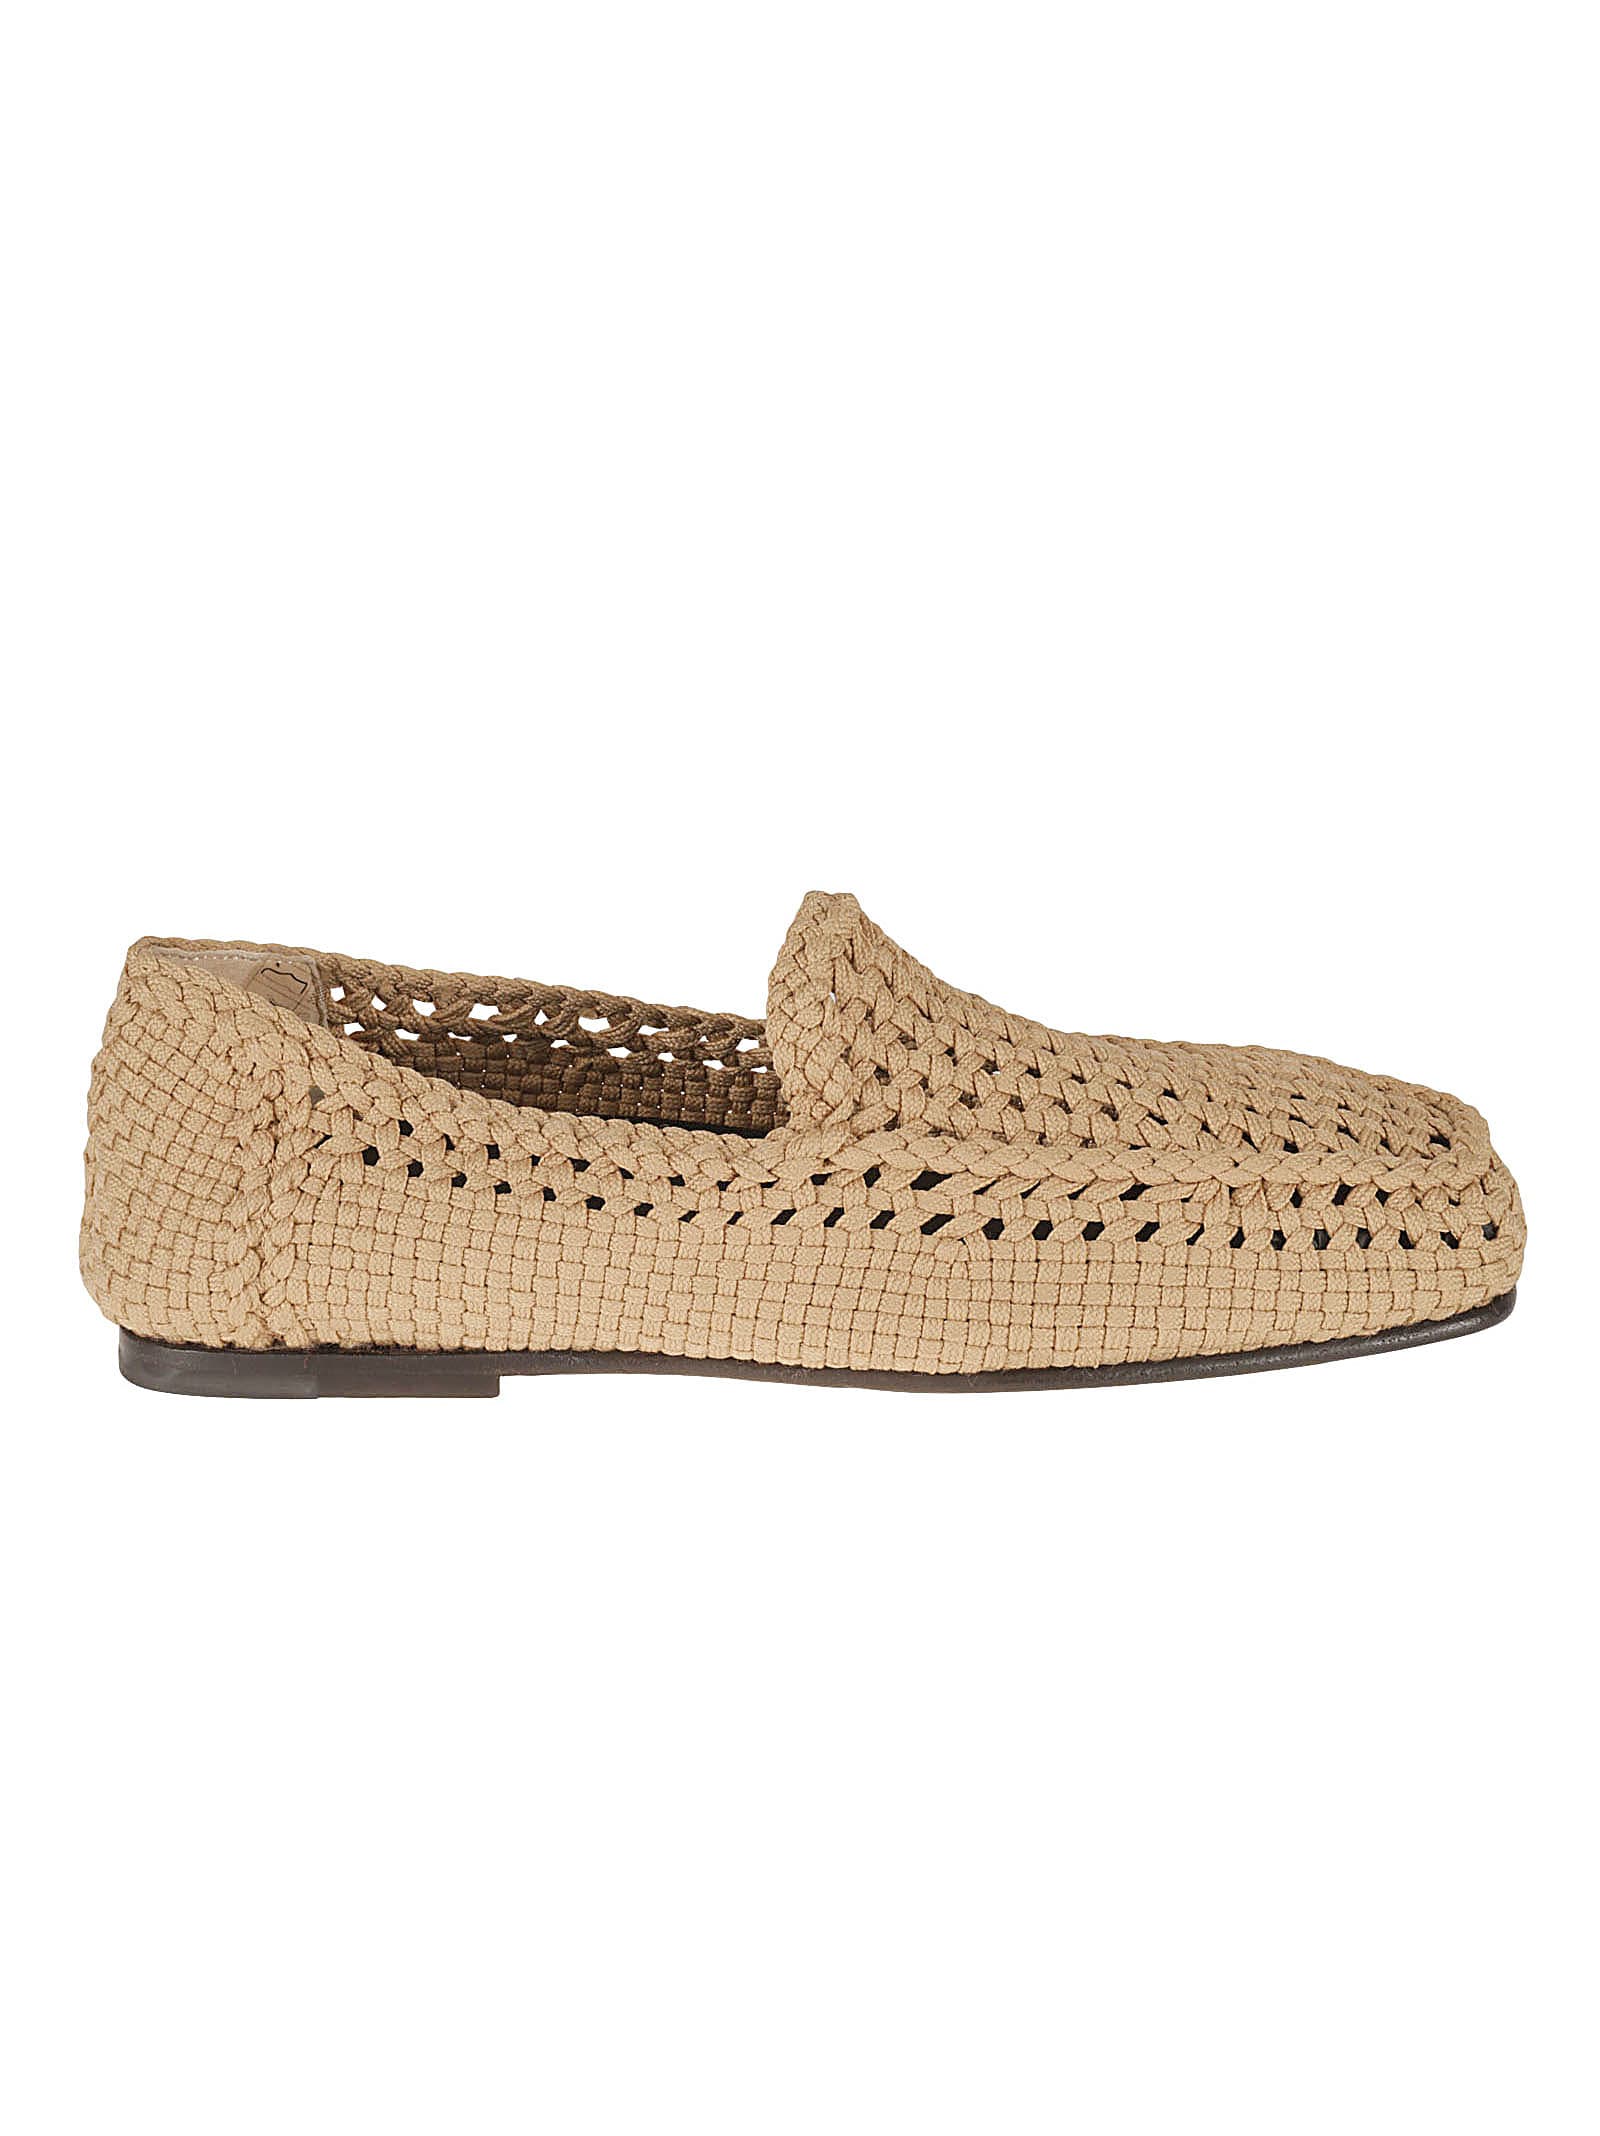 Dolce & Gabbana Crochet Loafers In Neutral